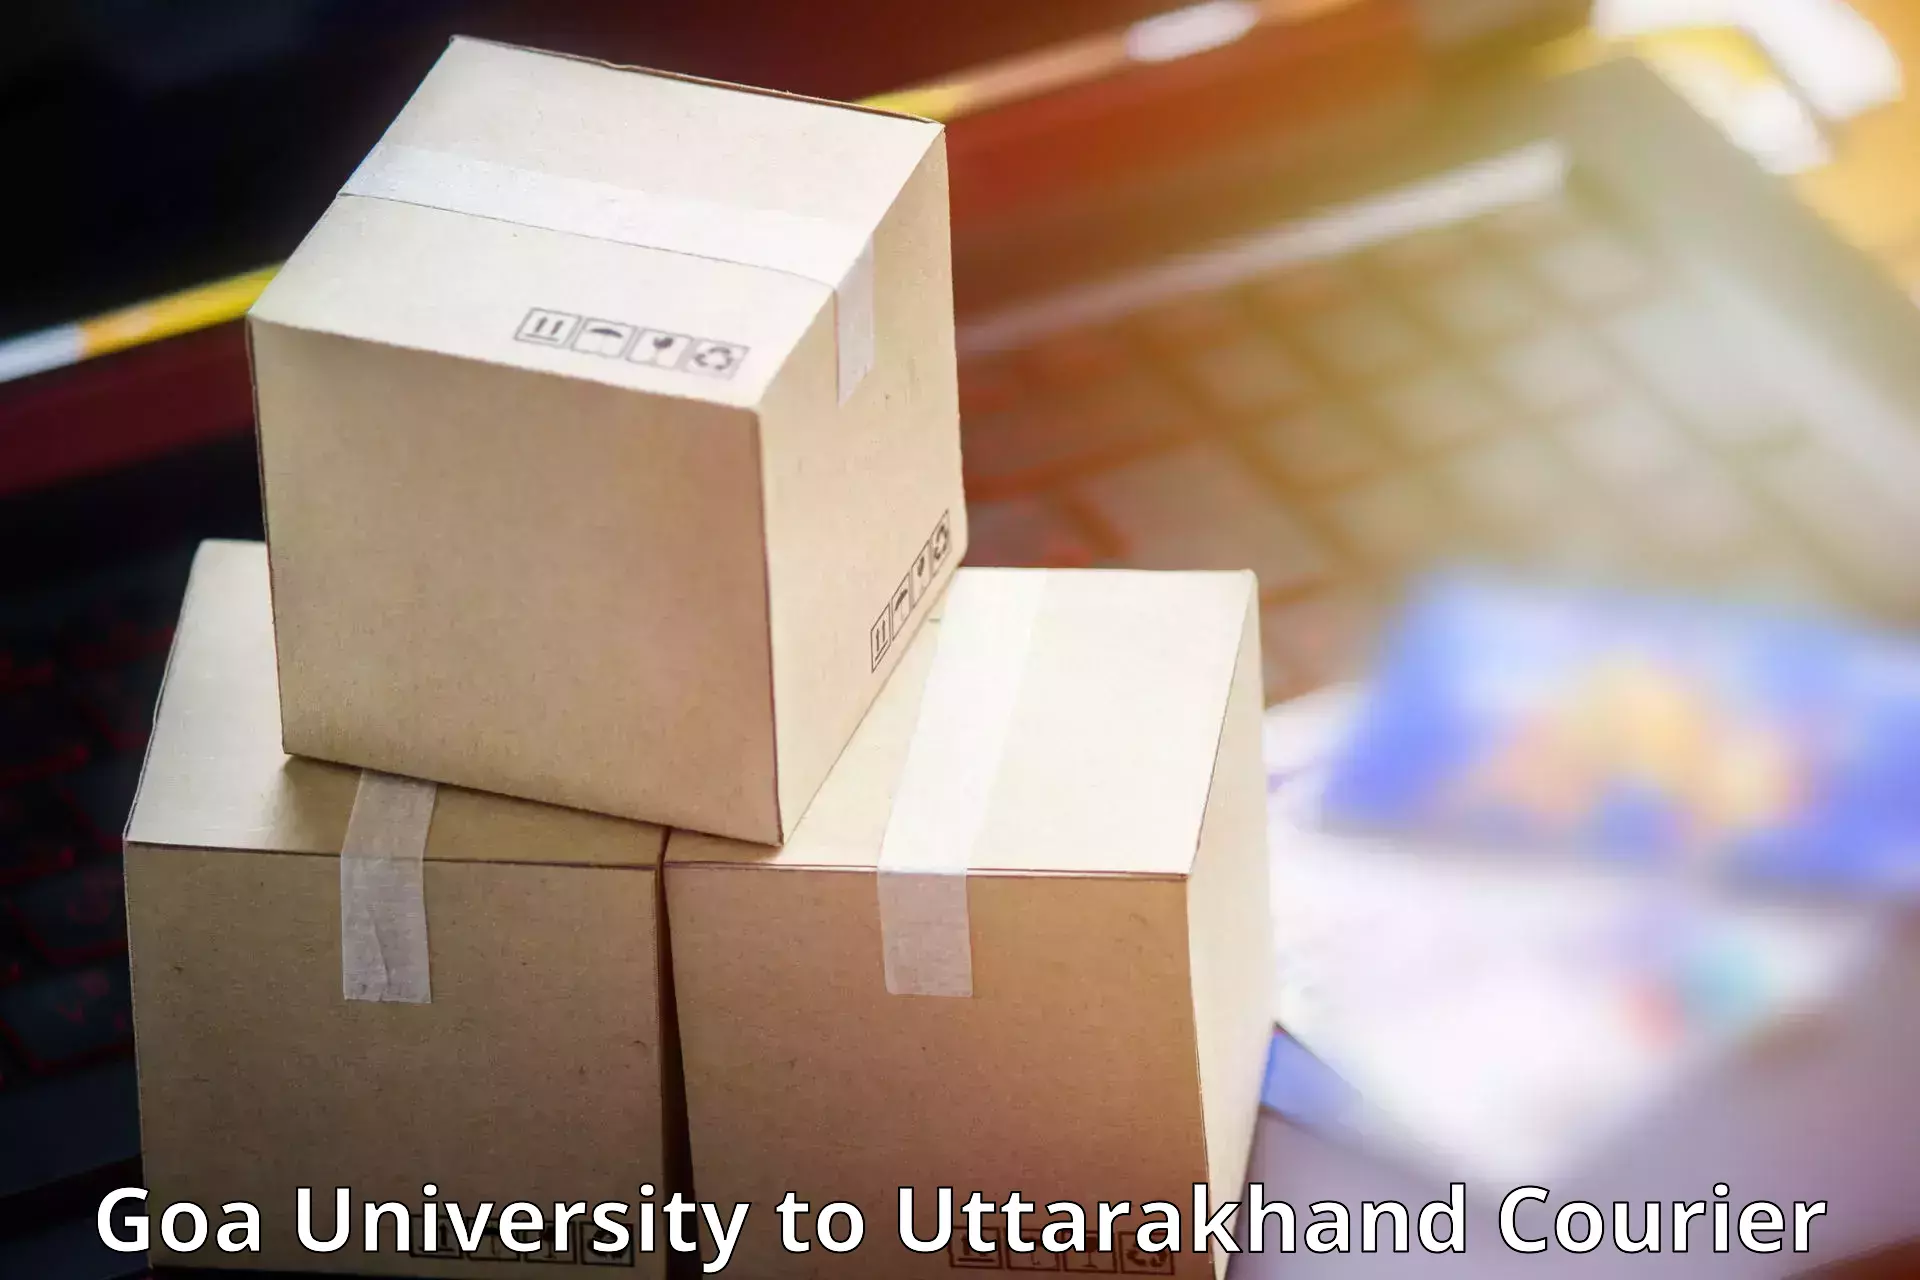 Premium courier services Goa University to Rudraprayag